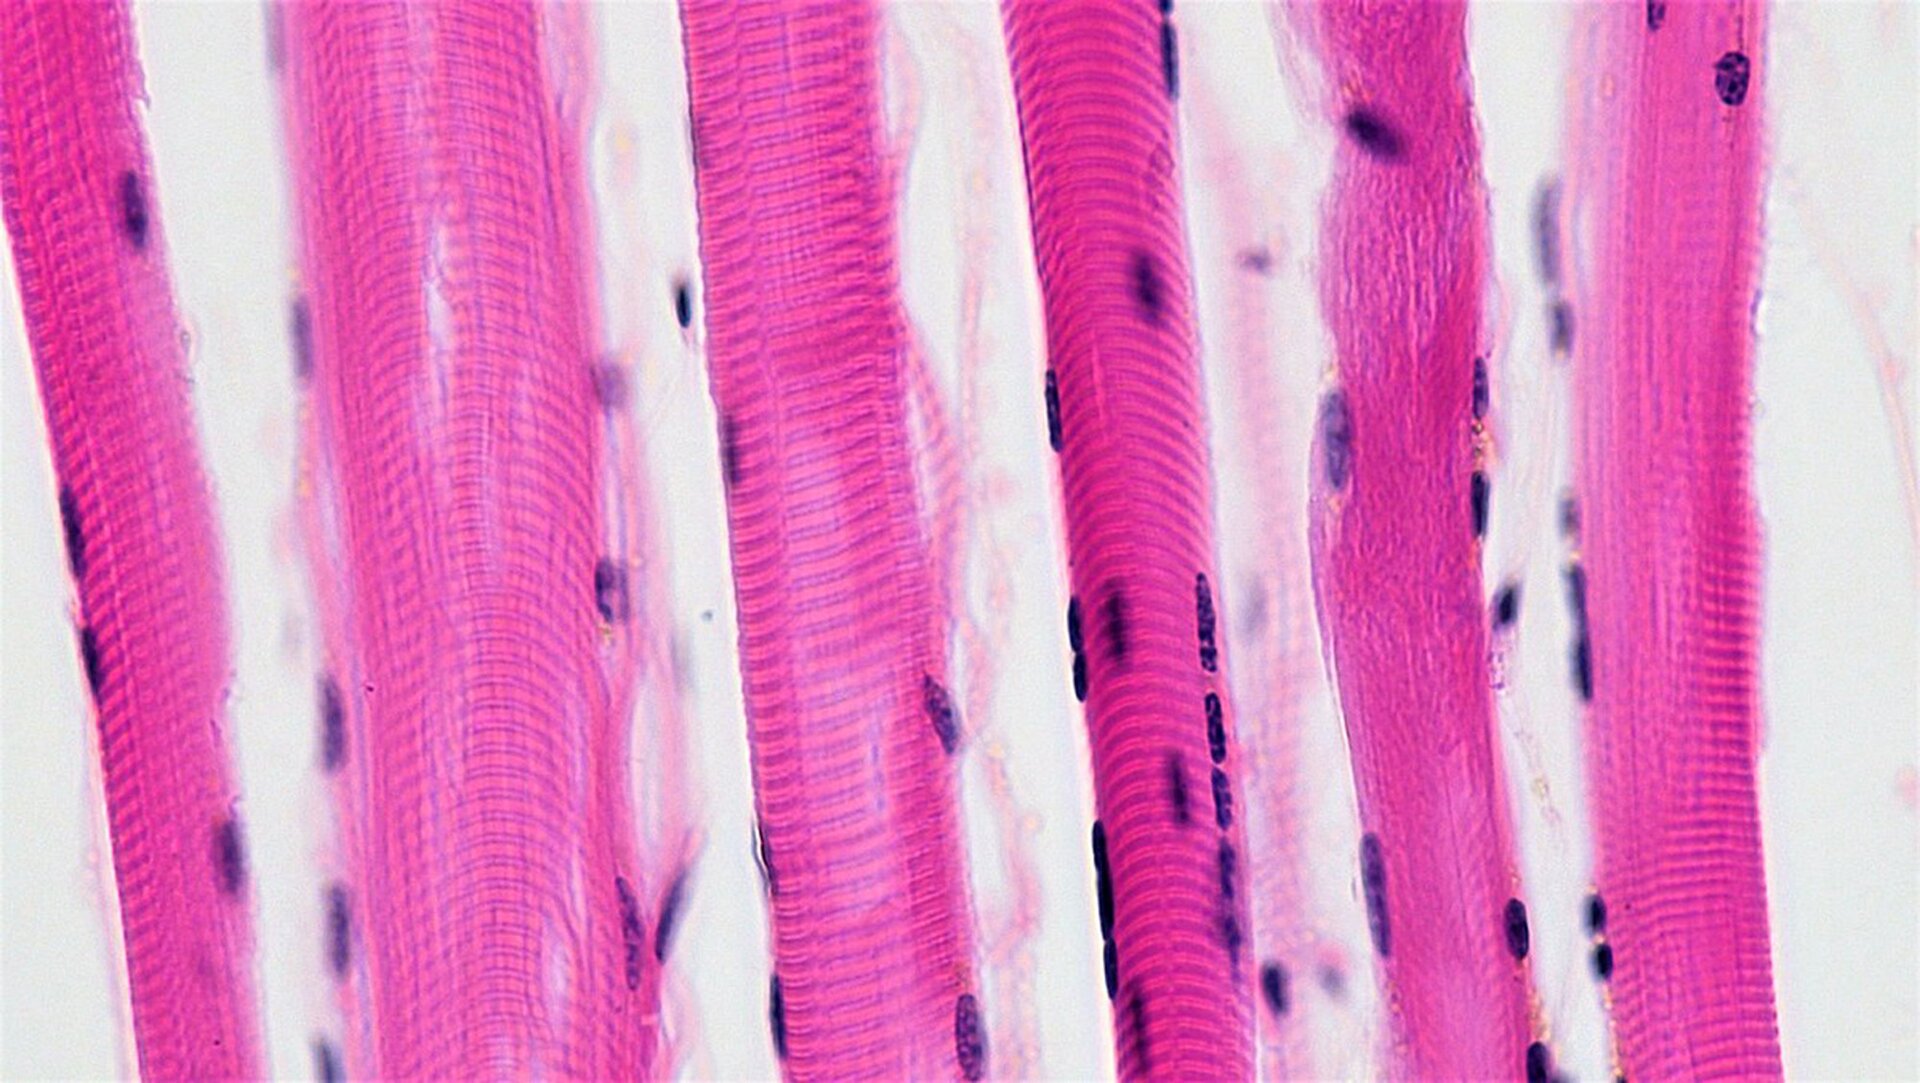 Na zdjęciu mikroskopowym widoczne są podłużne struktury w kolorze różowym. Są one warstwą równolegle, naprzemiennie ułożonych komórek. Są poprzecznie prążkowane. Znajdują się na nich wąskie, małe formy koloru fioletowego. 